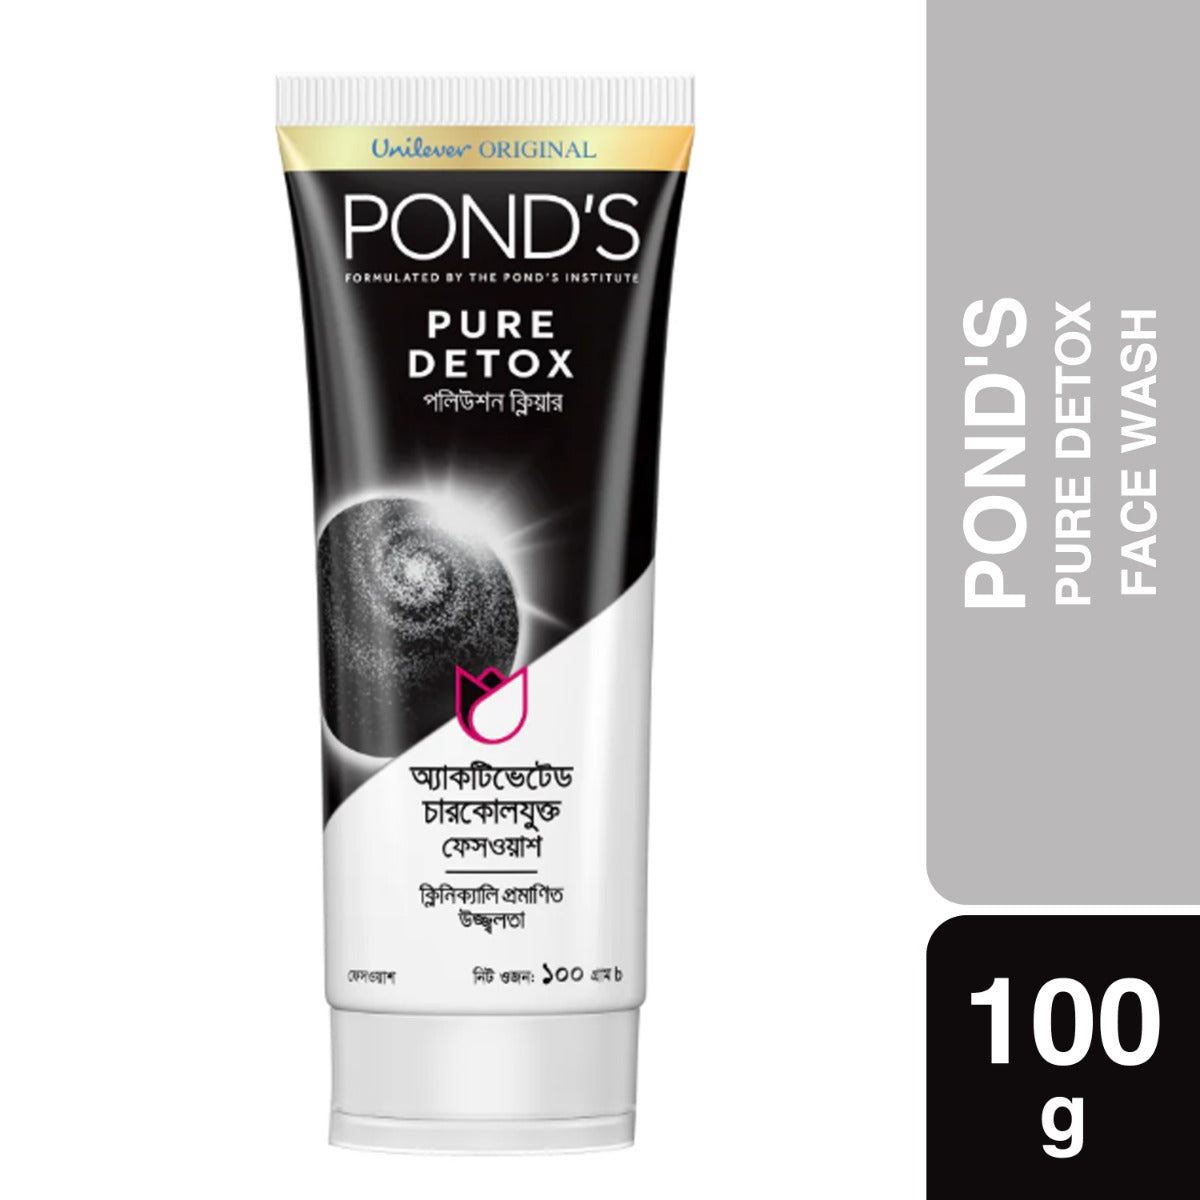 Ponds Pure Detox Face Wash